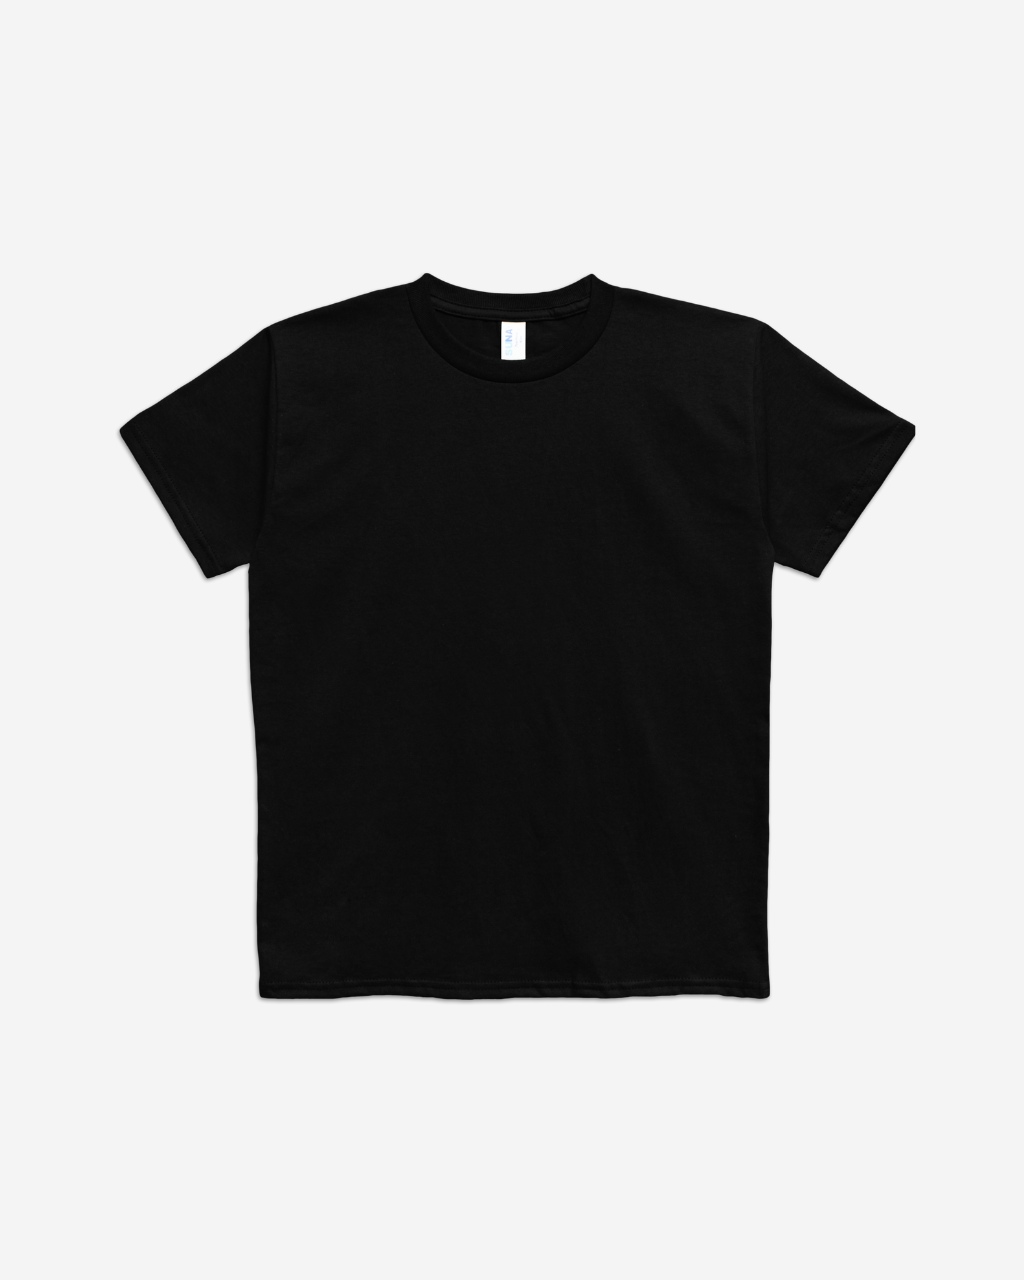 Suna Cotton® Kids T-shirt - 720B